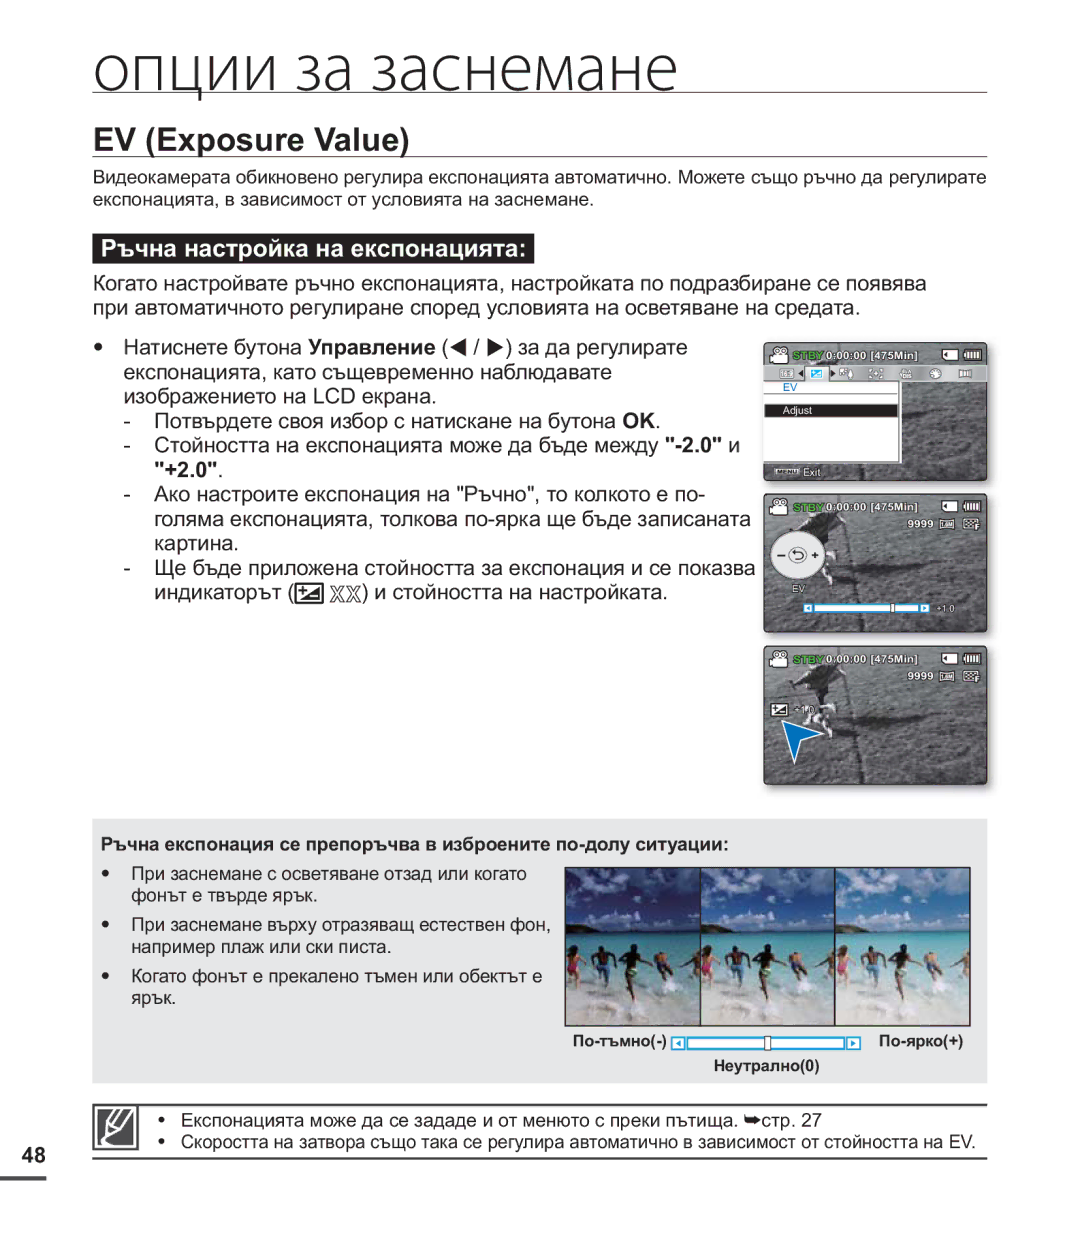 Samsung SMX-C20RP/EDC, SMX-C24BP/EDC, SMX-C20BP/EDC manual EV Exposure Value, +2.0 